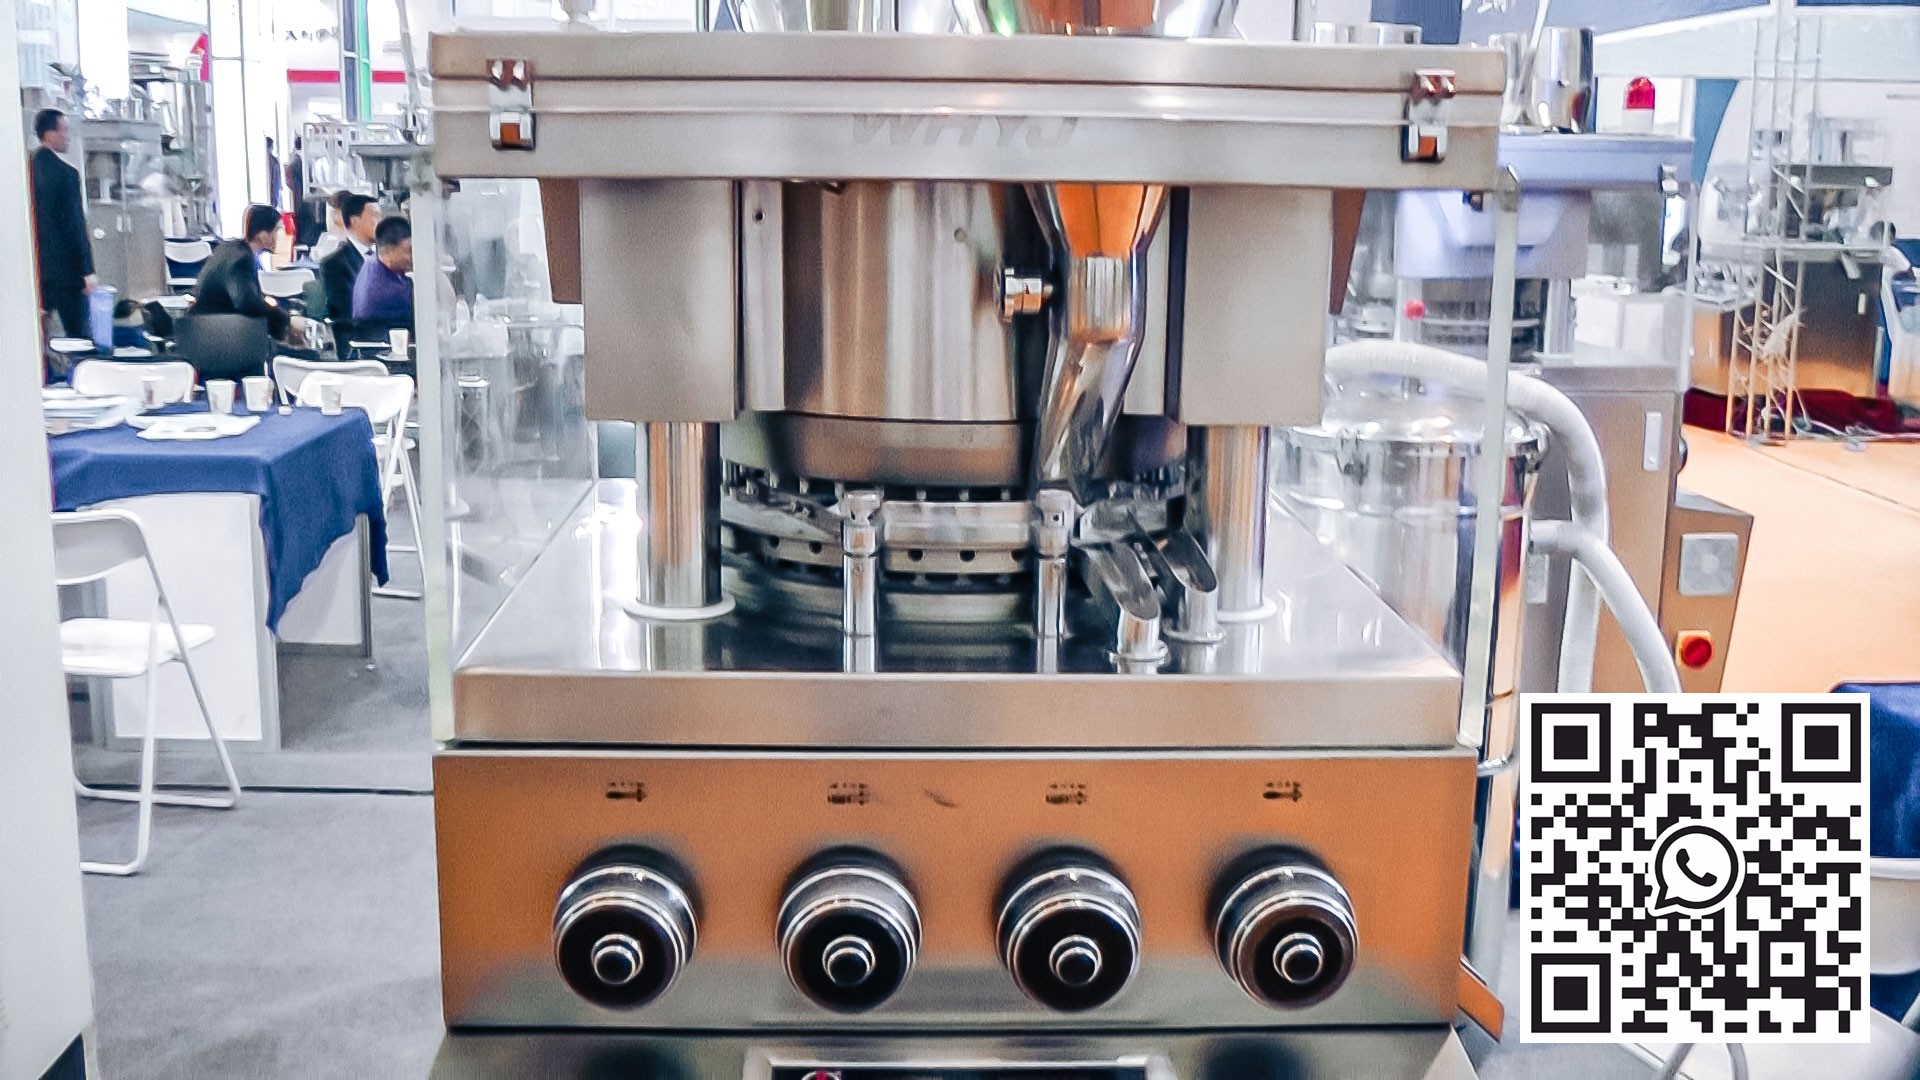 Equipo automático para la producción y prensado de comprimidos en la producción farmacéutica.